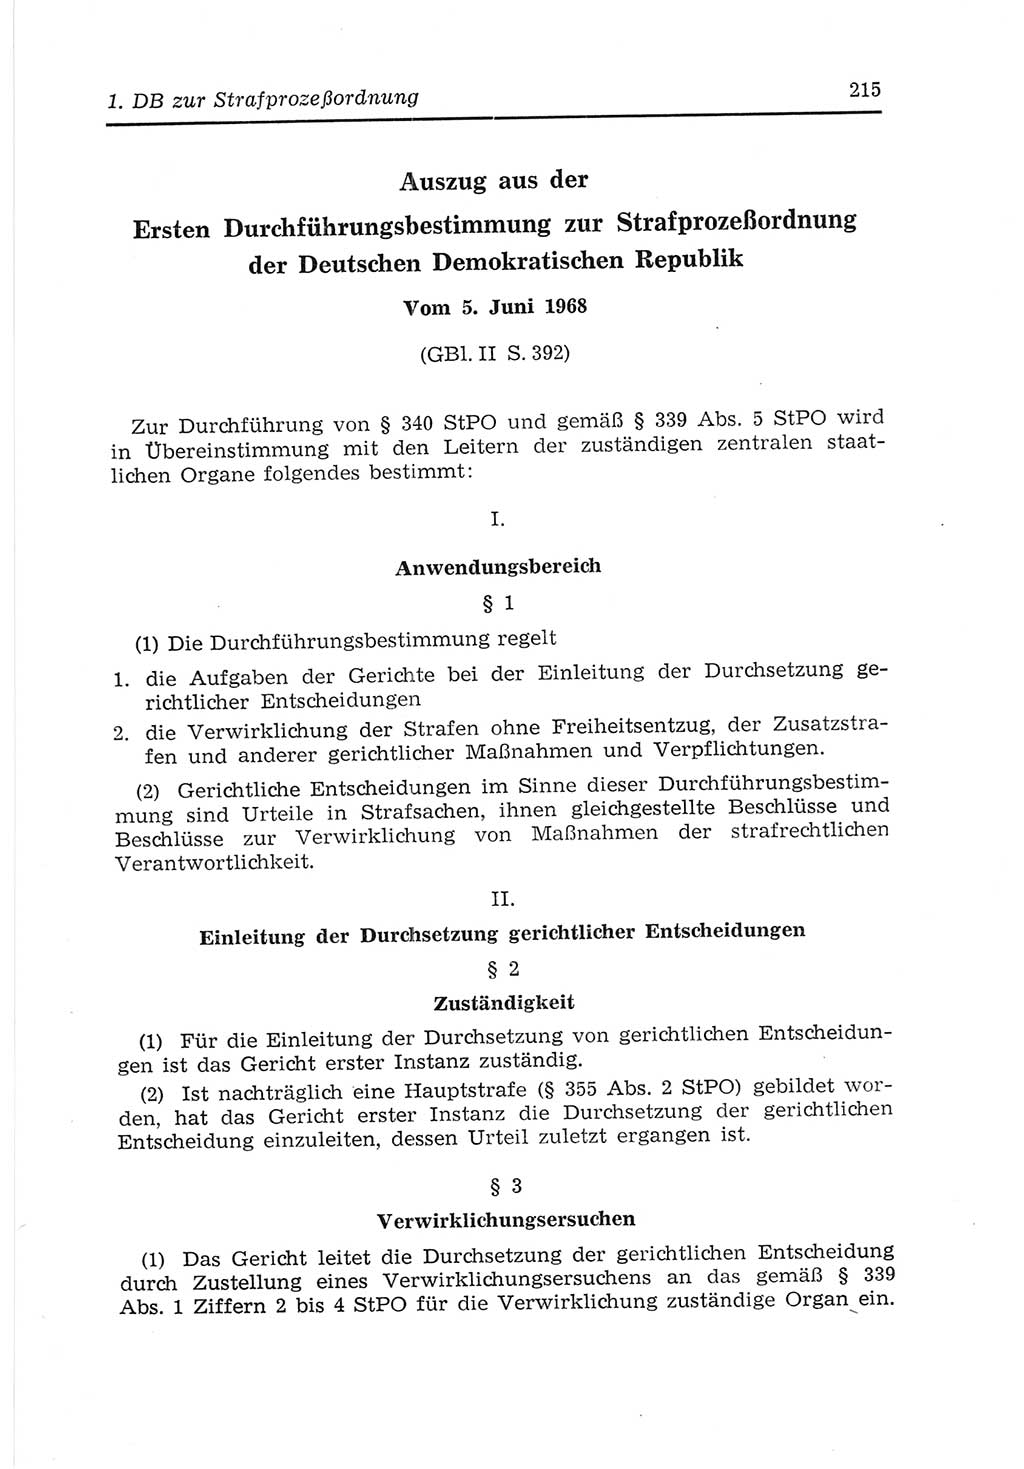 Strafvollzugs- und Wiedereingliederungsgesetz (SVWG) der Deutschen Demokratischen Republik (DDR) 1968, Seite 215 (SVWG DDR 1968, S. 215)